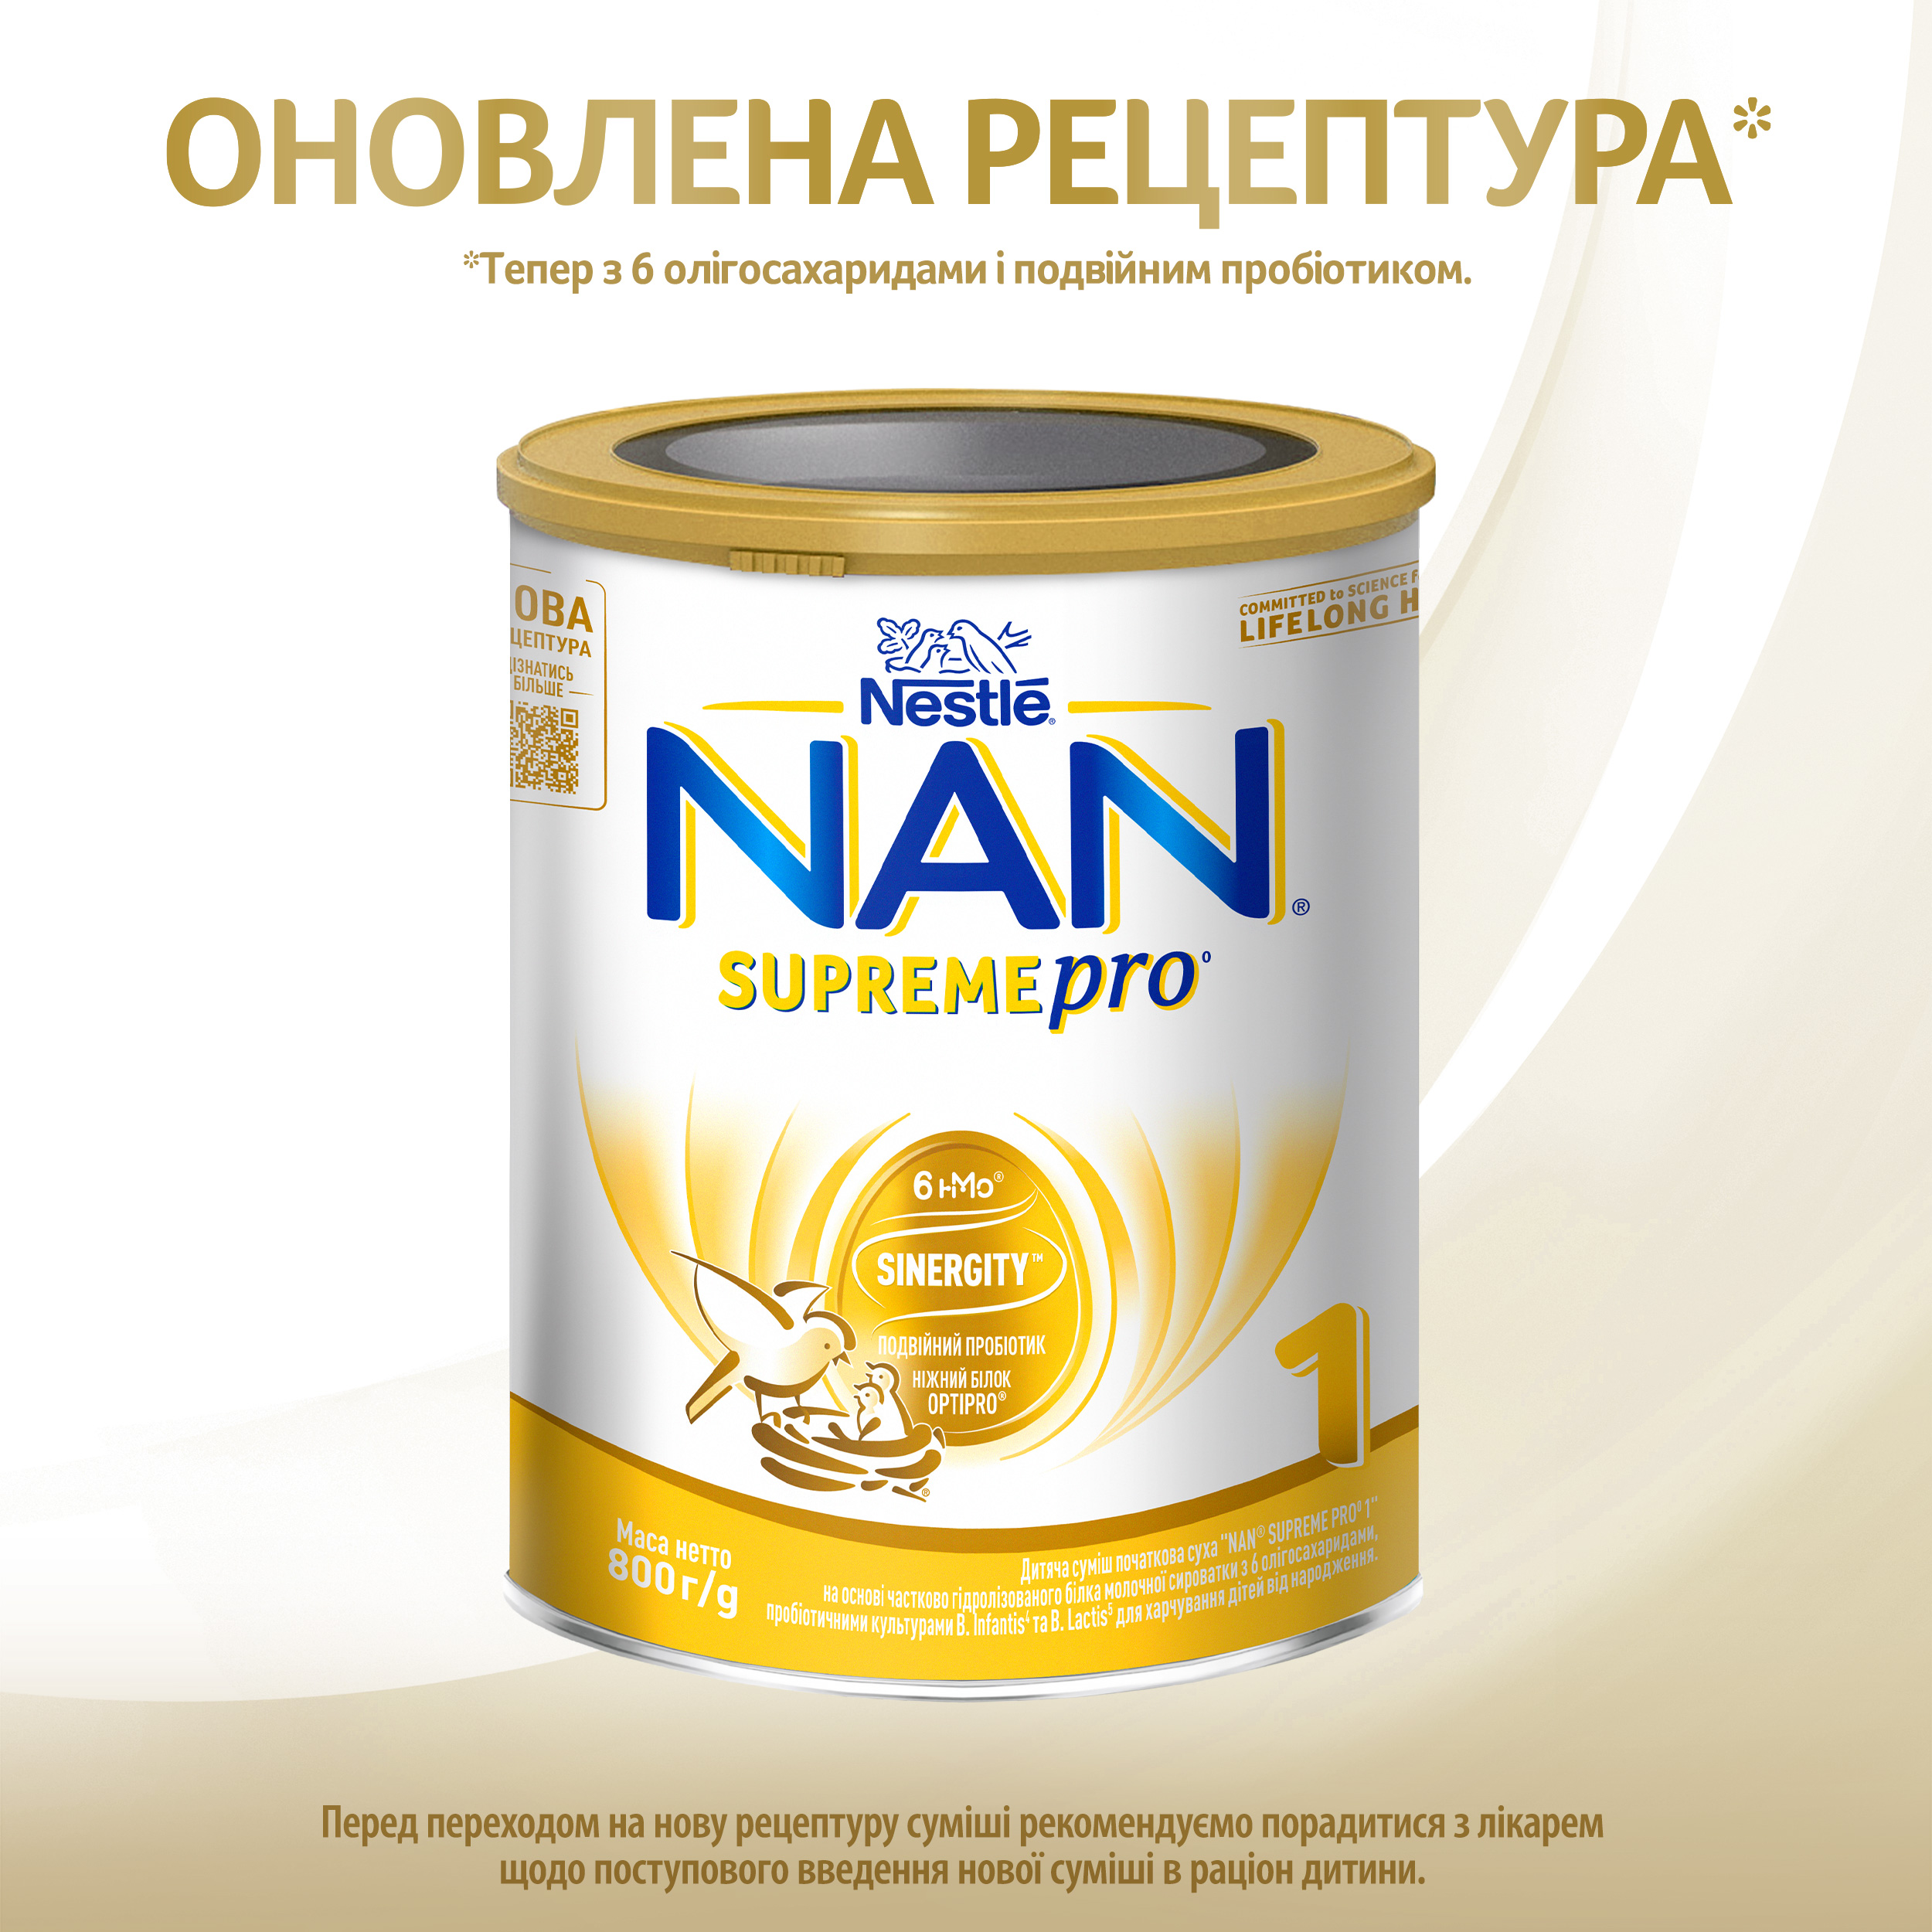 Суха молочна суміш NAN Supreme Pro 1, 800 г - фото 2